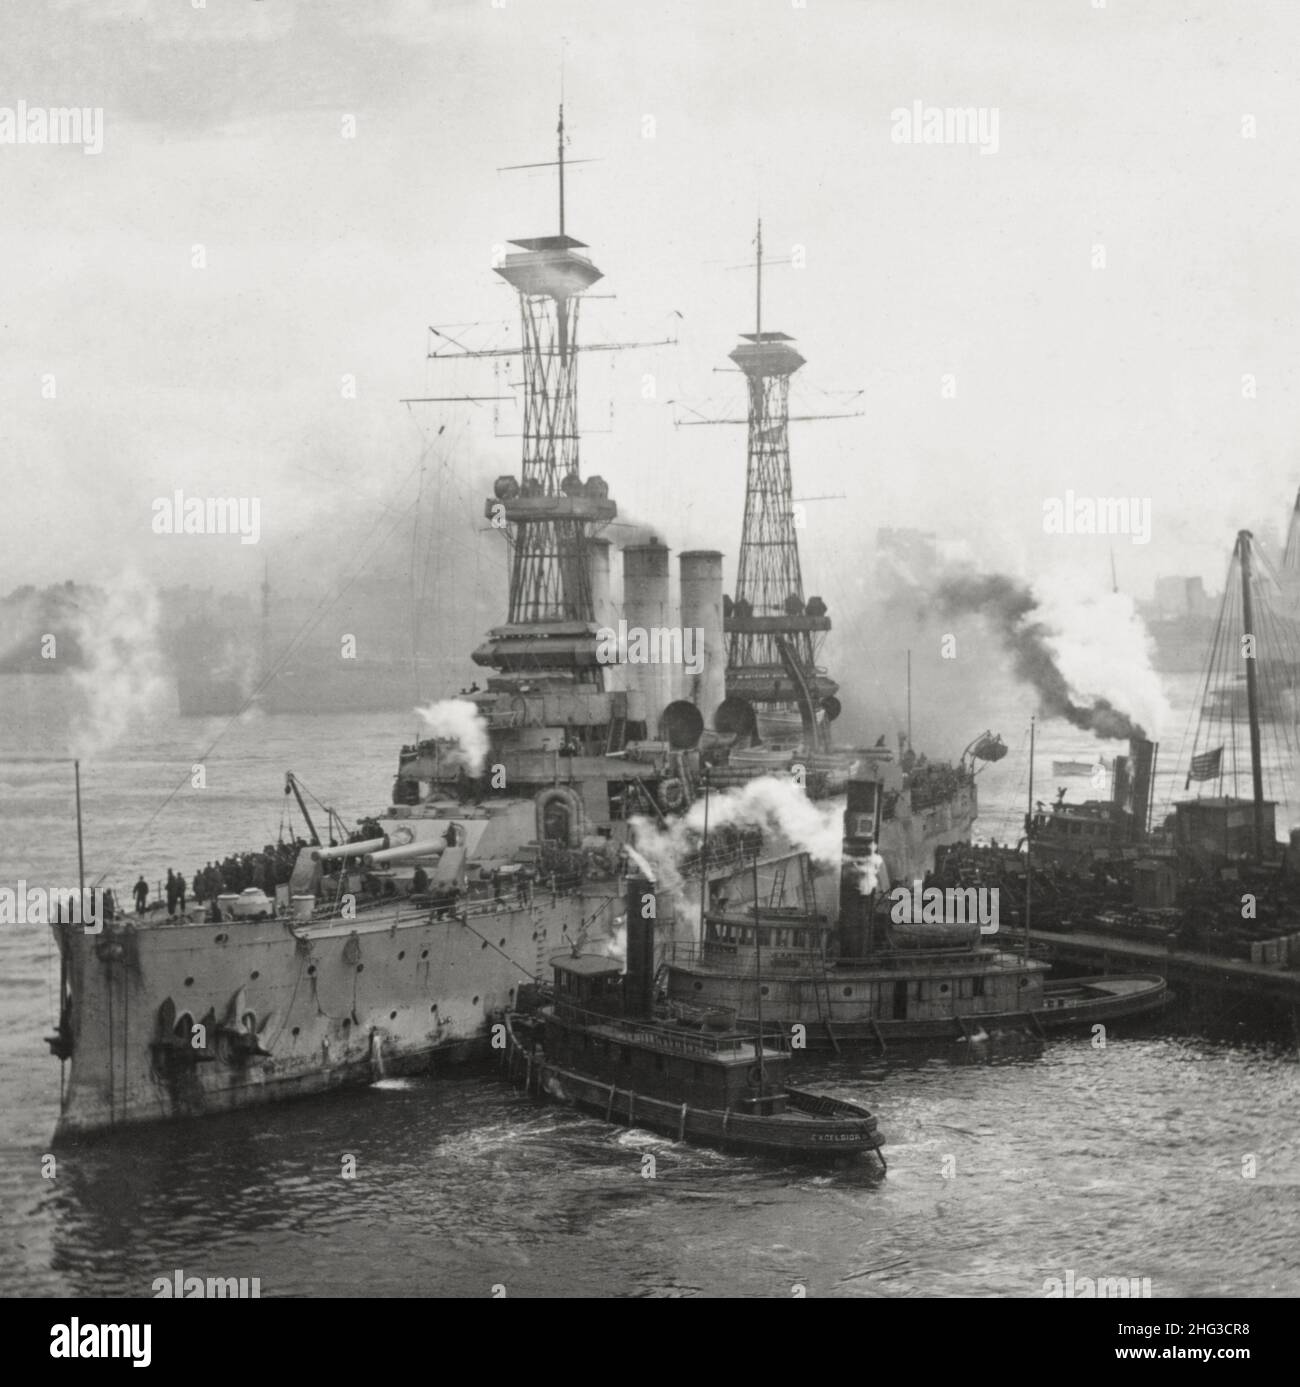 Photo d'époque de la première Guerre mondiale 1914-1918.Les cutleships des États-Unis servent de moyens de transport pour ramener nos troupes à la maison.La Louisiane à quai dans le port de New York. Banque D'Images